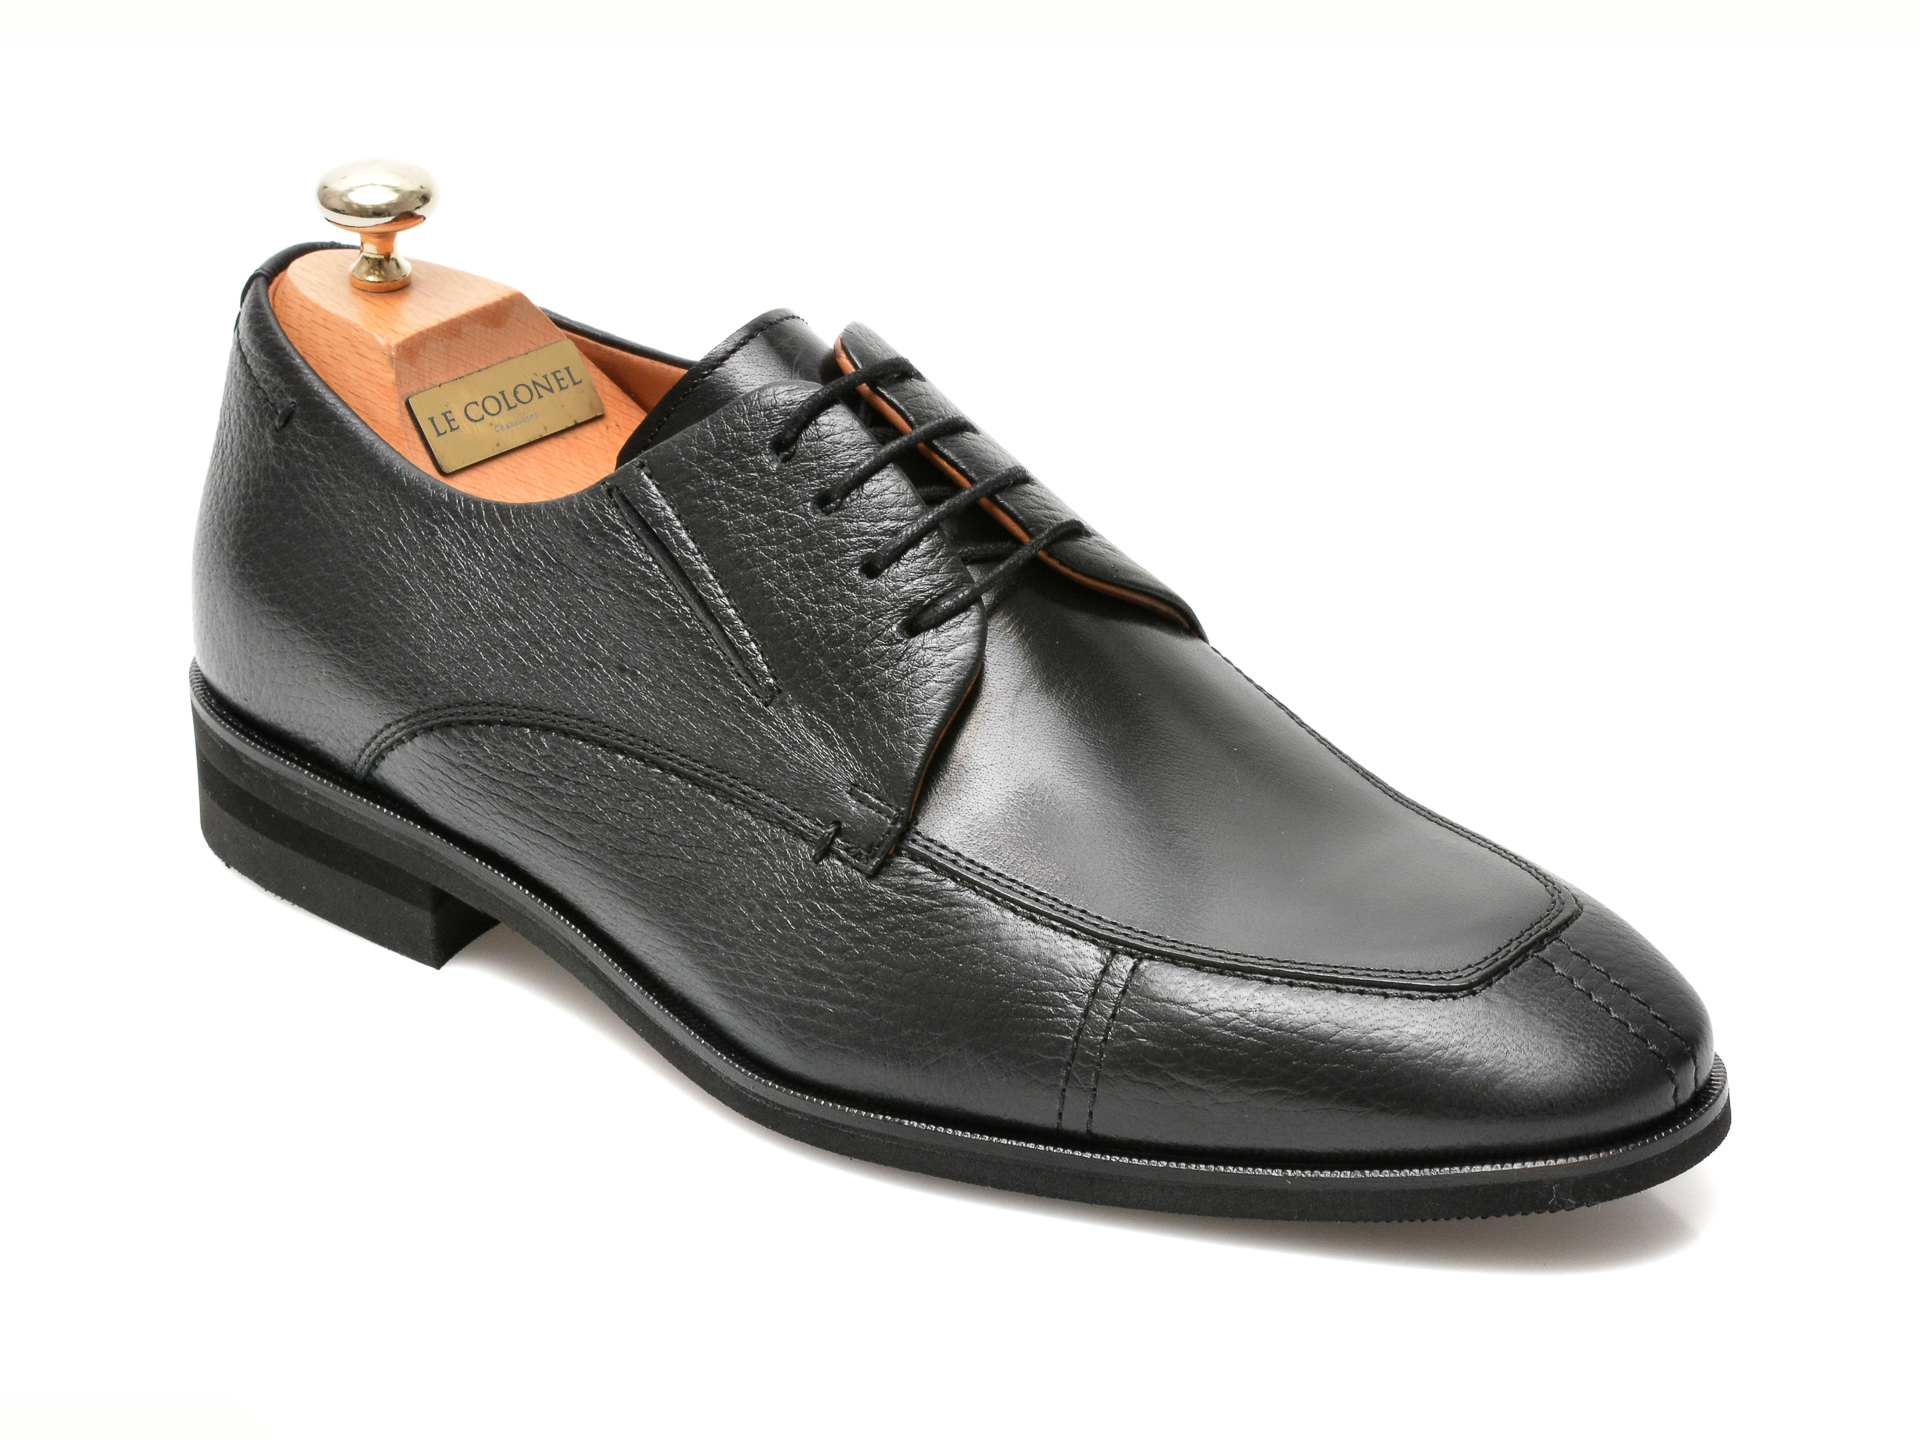 Pantofi LE COLONEL negri, 48761, din piele naturala Le Colonel Le Colonel